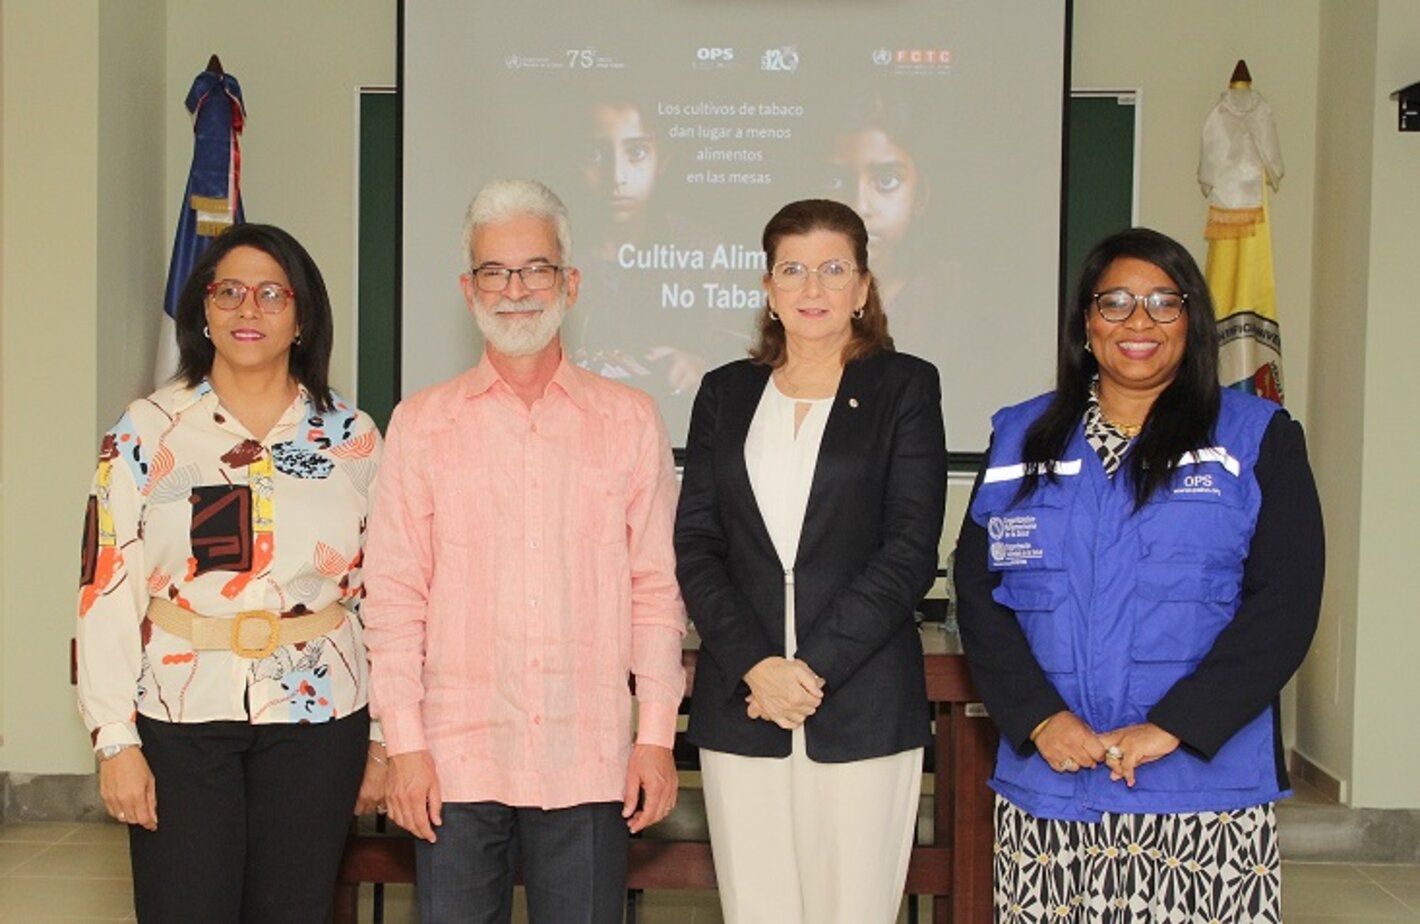 República Dominicana conmemora el Día Mundial Sin Tabaco con autoridades de salud